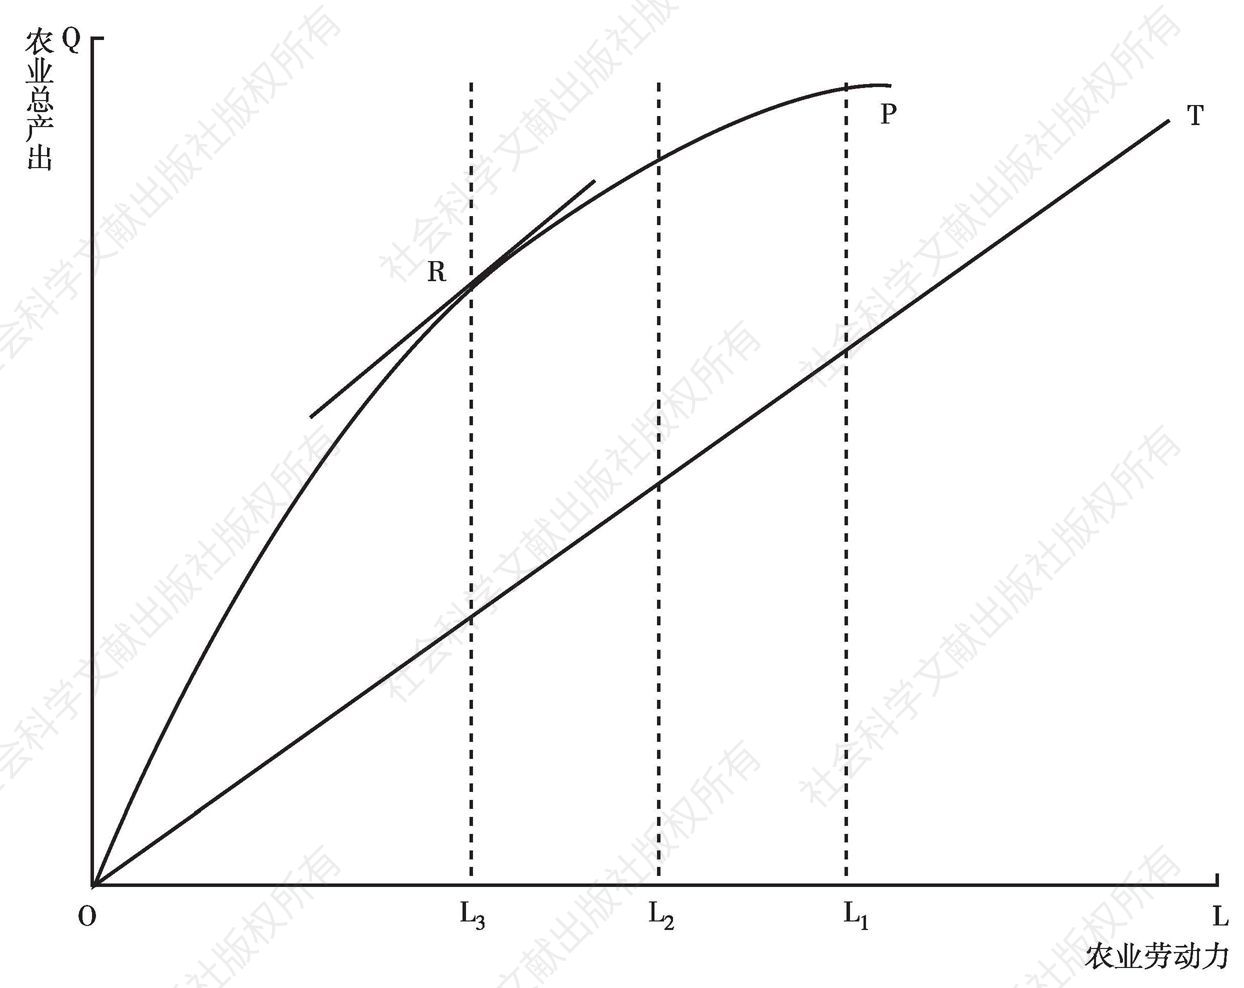 图1-2 二元经济发展的阶段与转折点